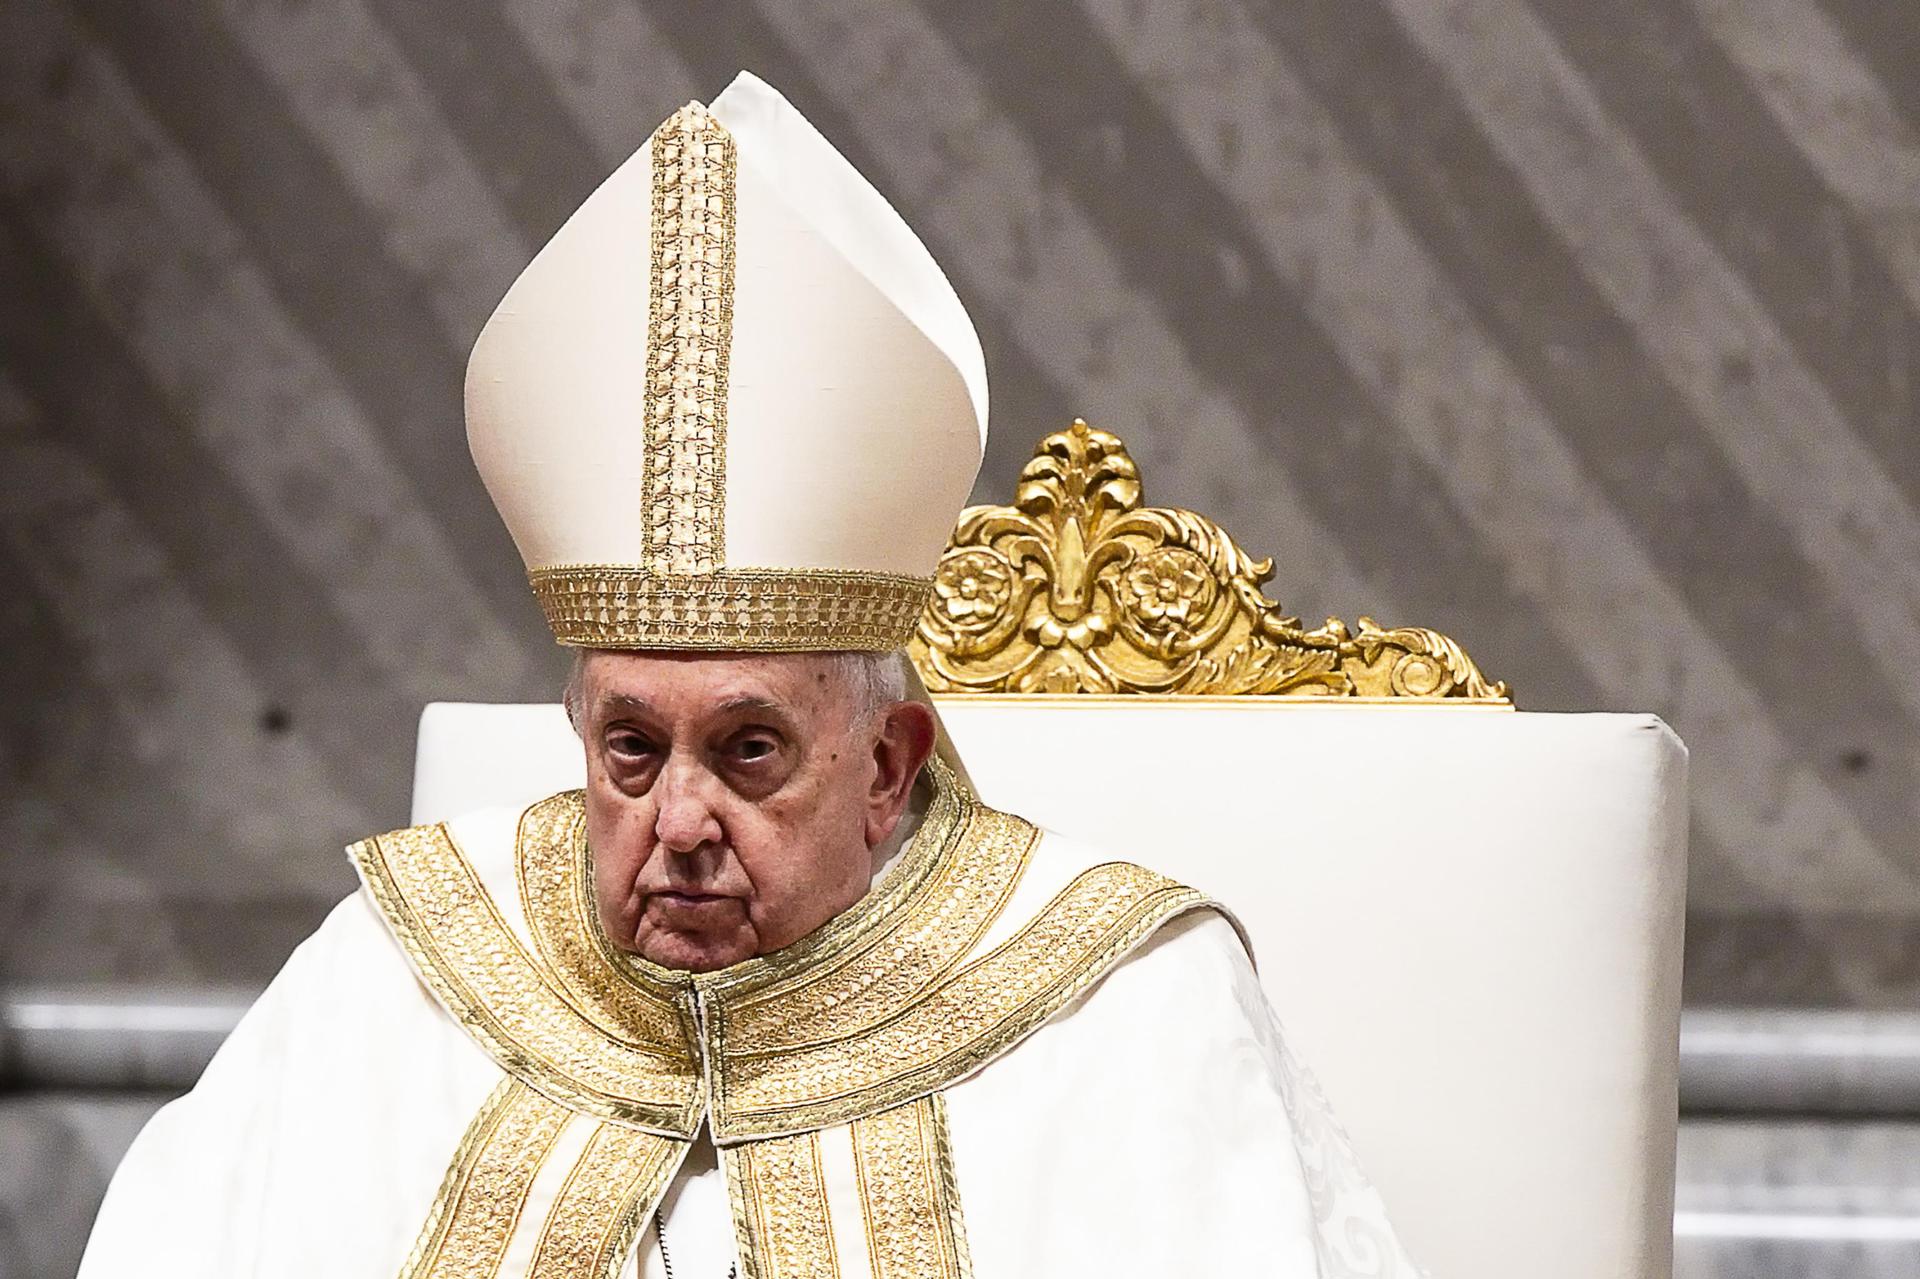 El papa Francisco y el sexo: polémica en el vaticano por la apertura del sumo pontifice